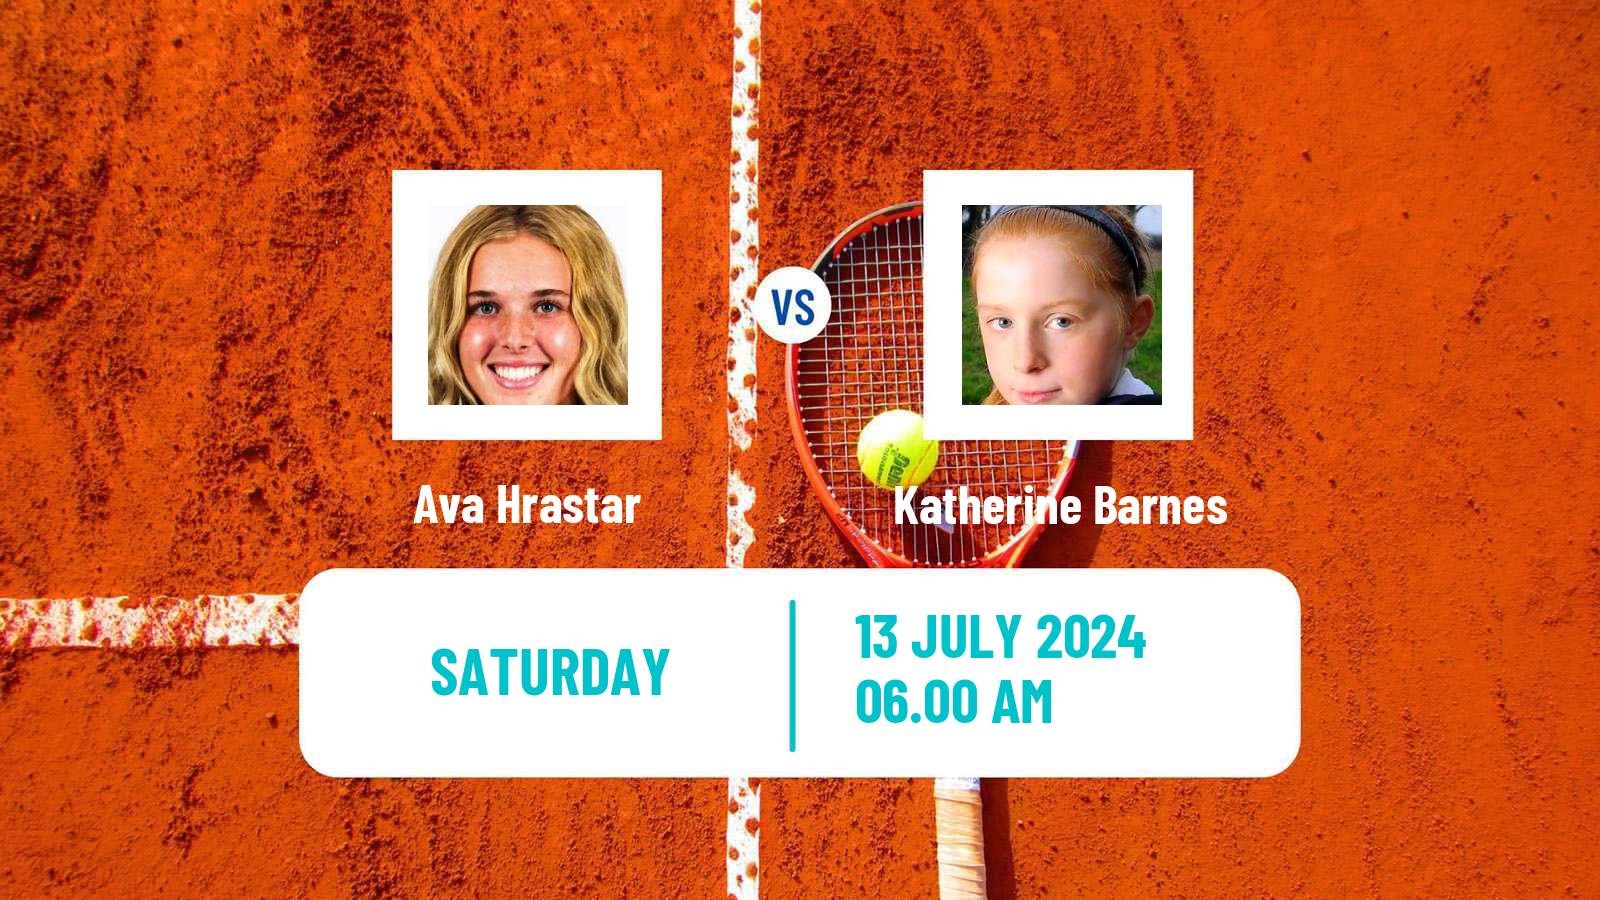 Tennis ITF W15 Grodzisk Mazowiecki Women Ava Hrastar - Katherine Barnes